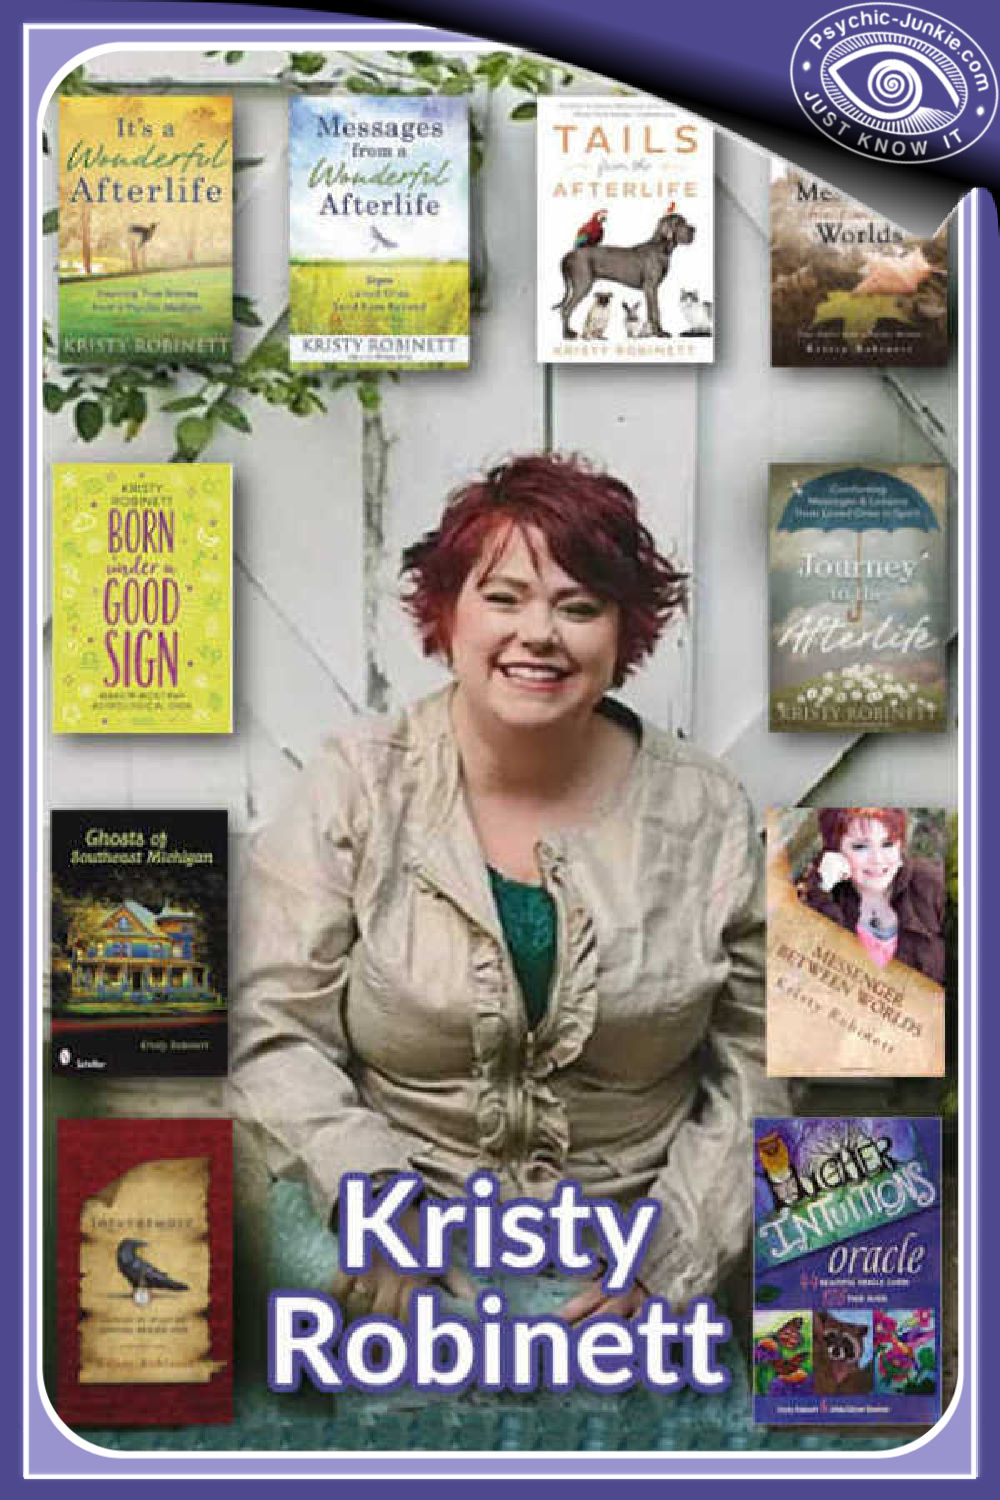 Kristy Robinett - Psychic Medium and Published Author